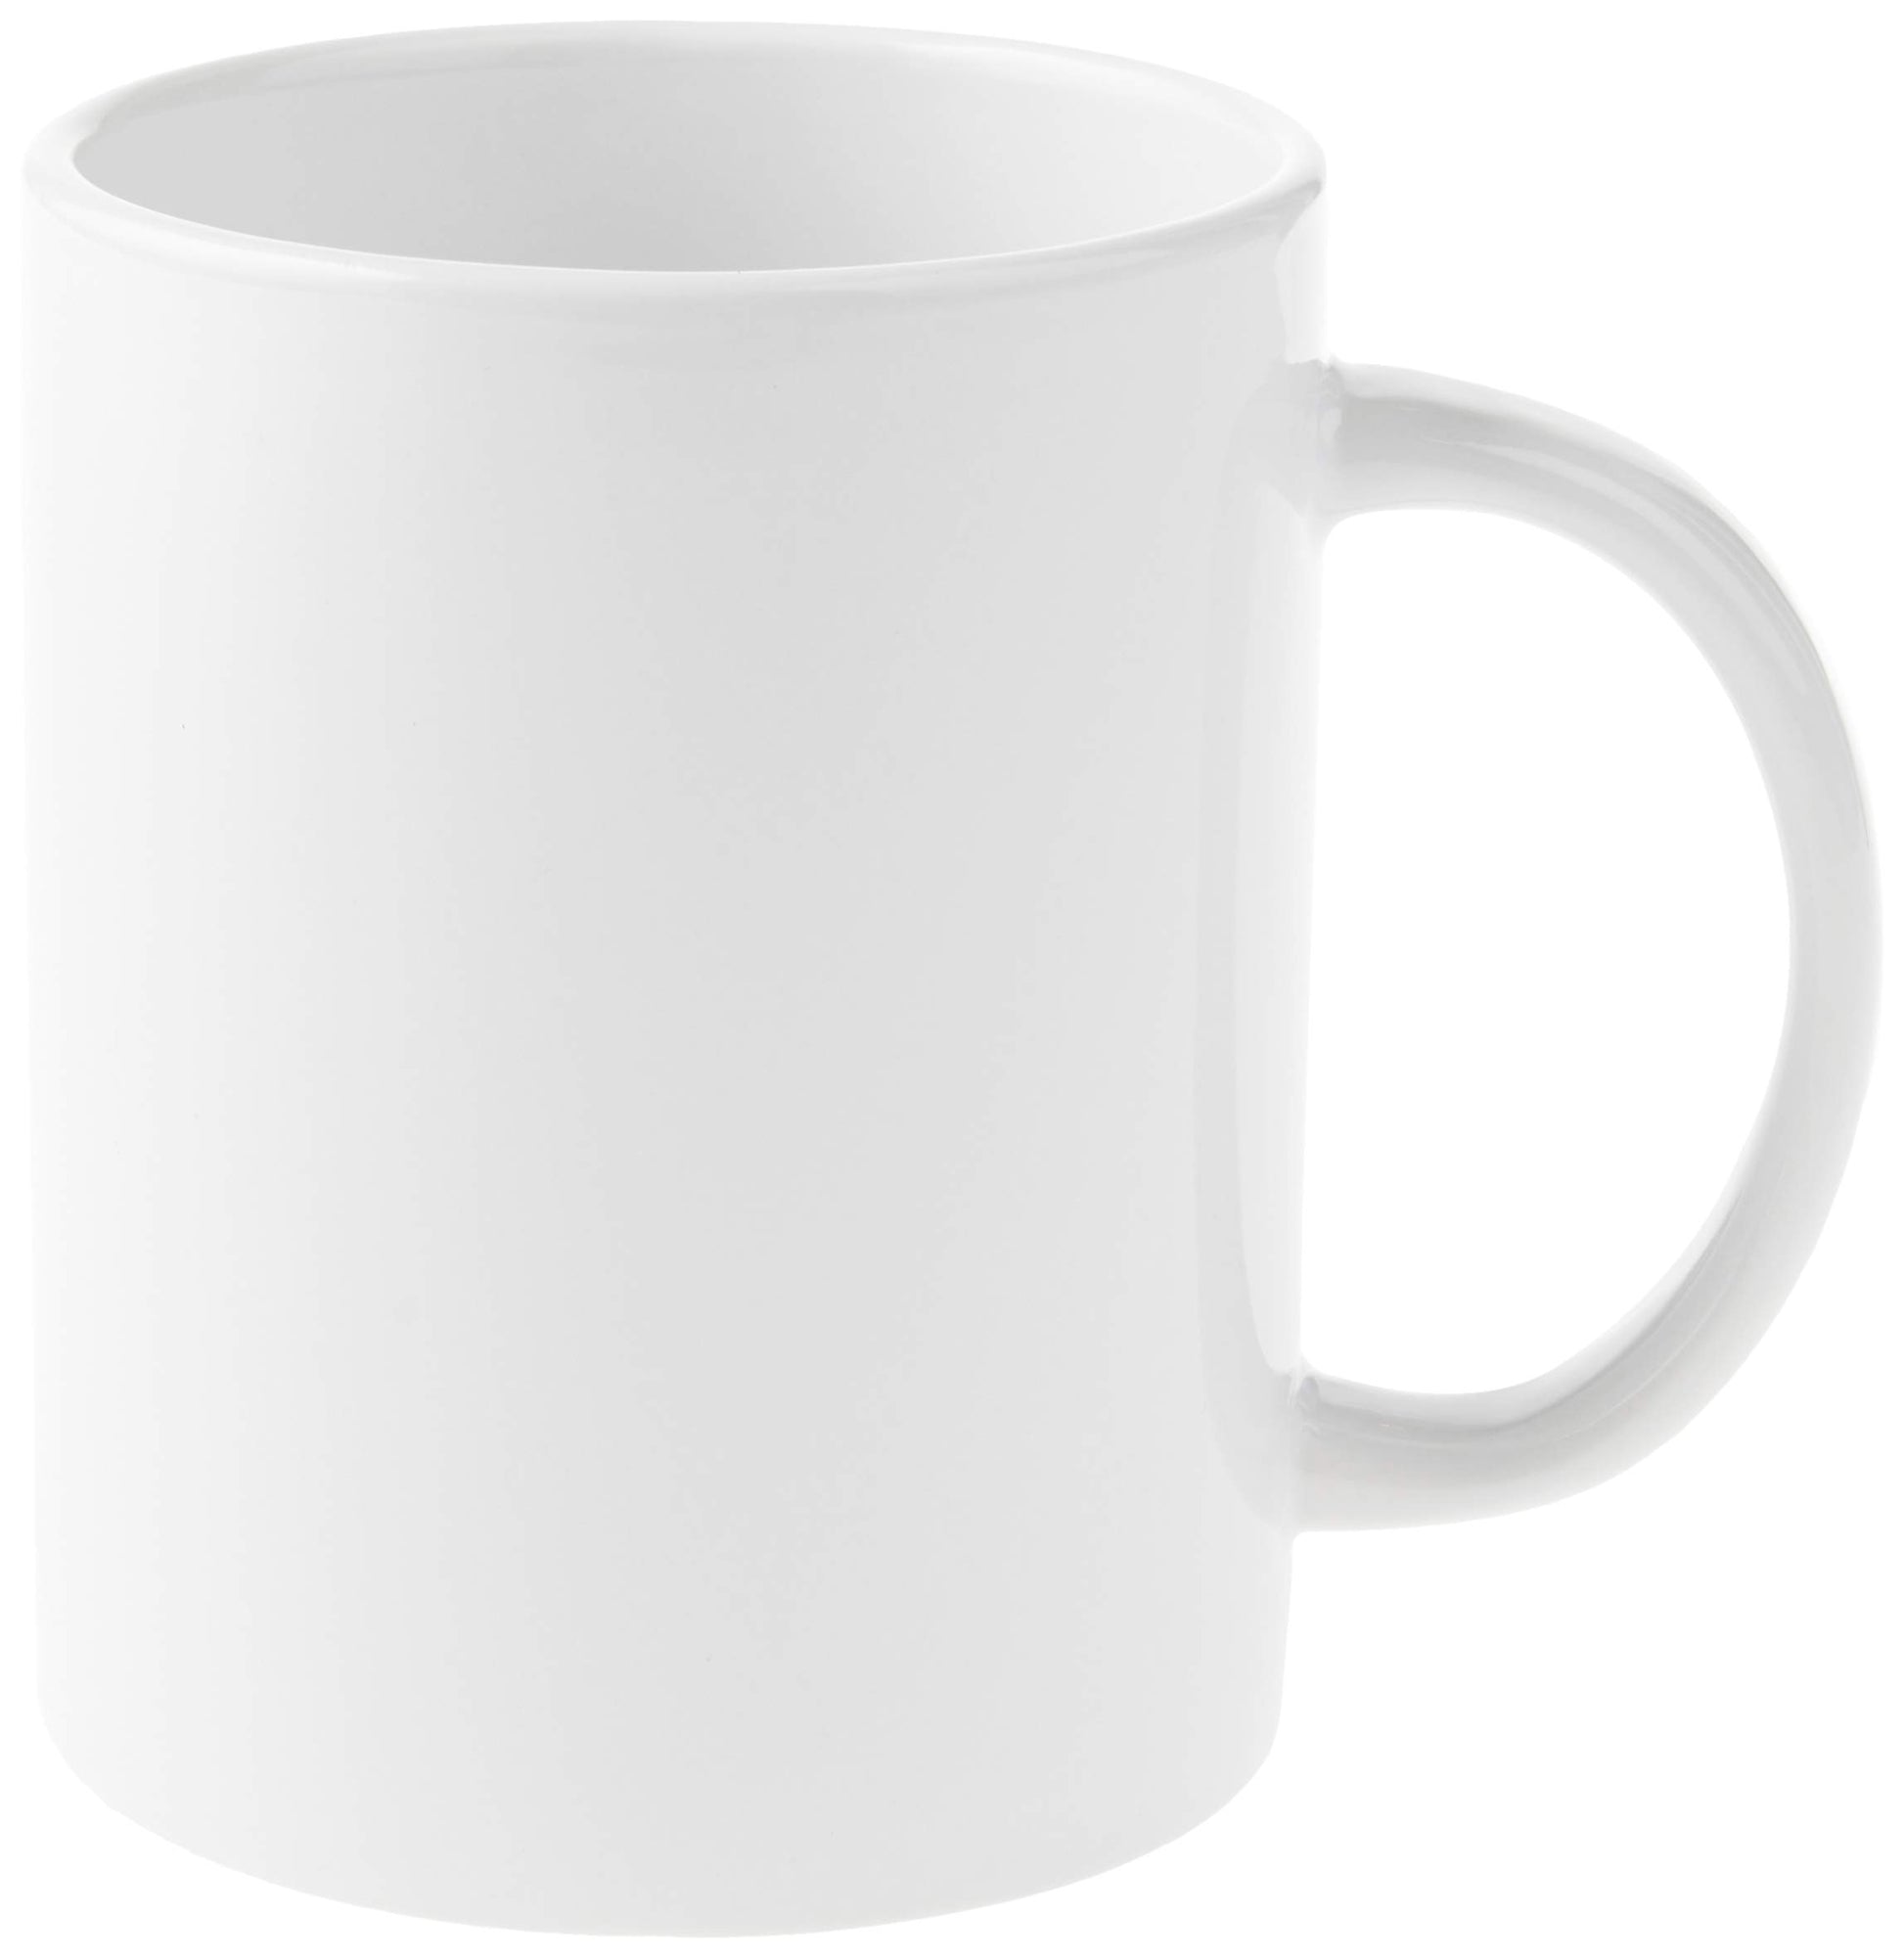 Cricut Beveled Blank Mug, Ceramic-Coated, Dishwasher & Microwave Safe to  Decorate, Mug Press & Infusible Ink Compatible,15 Oz Sublimation Mug, Ideal